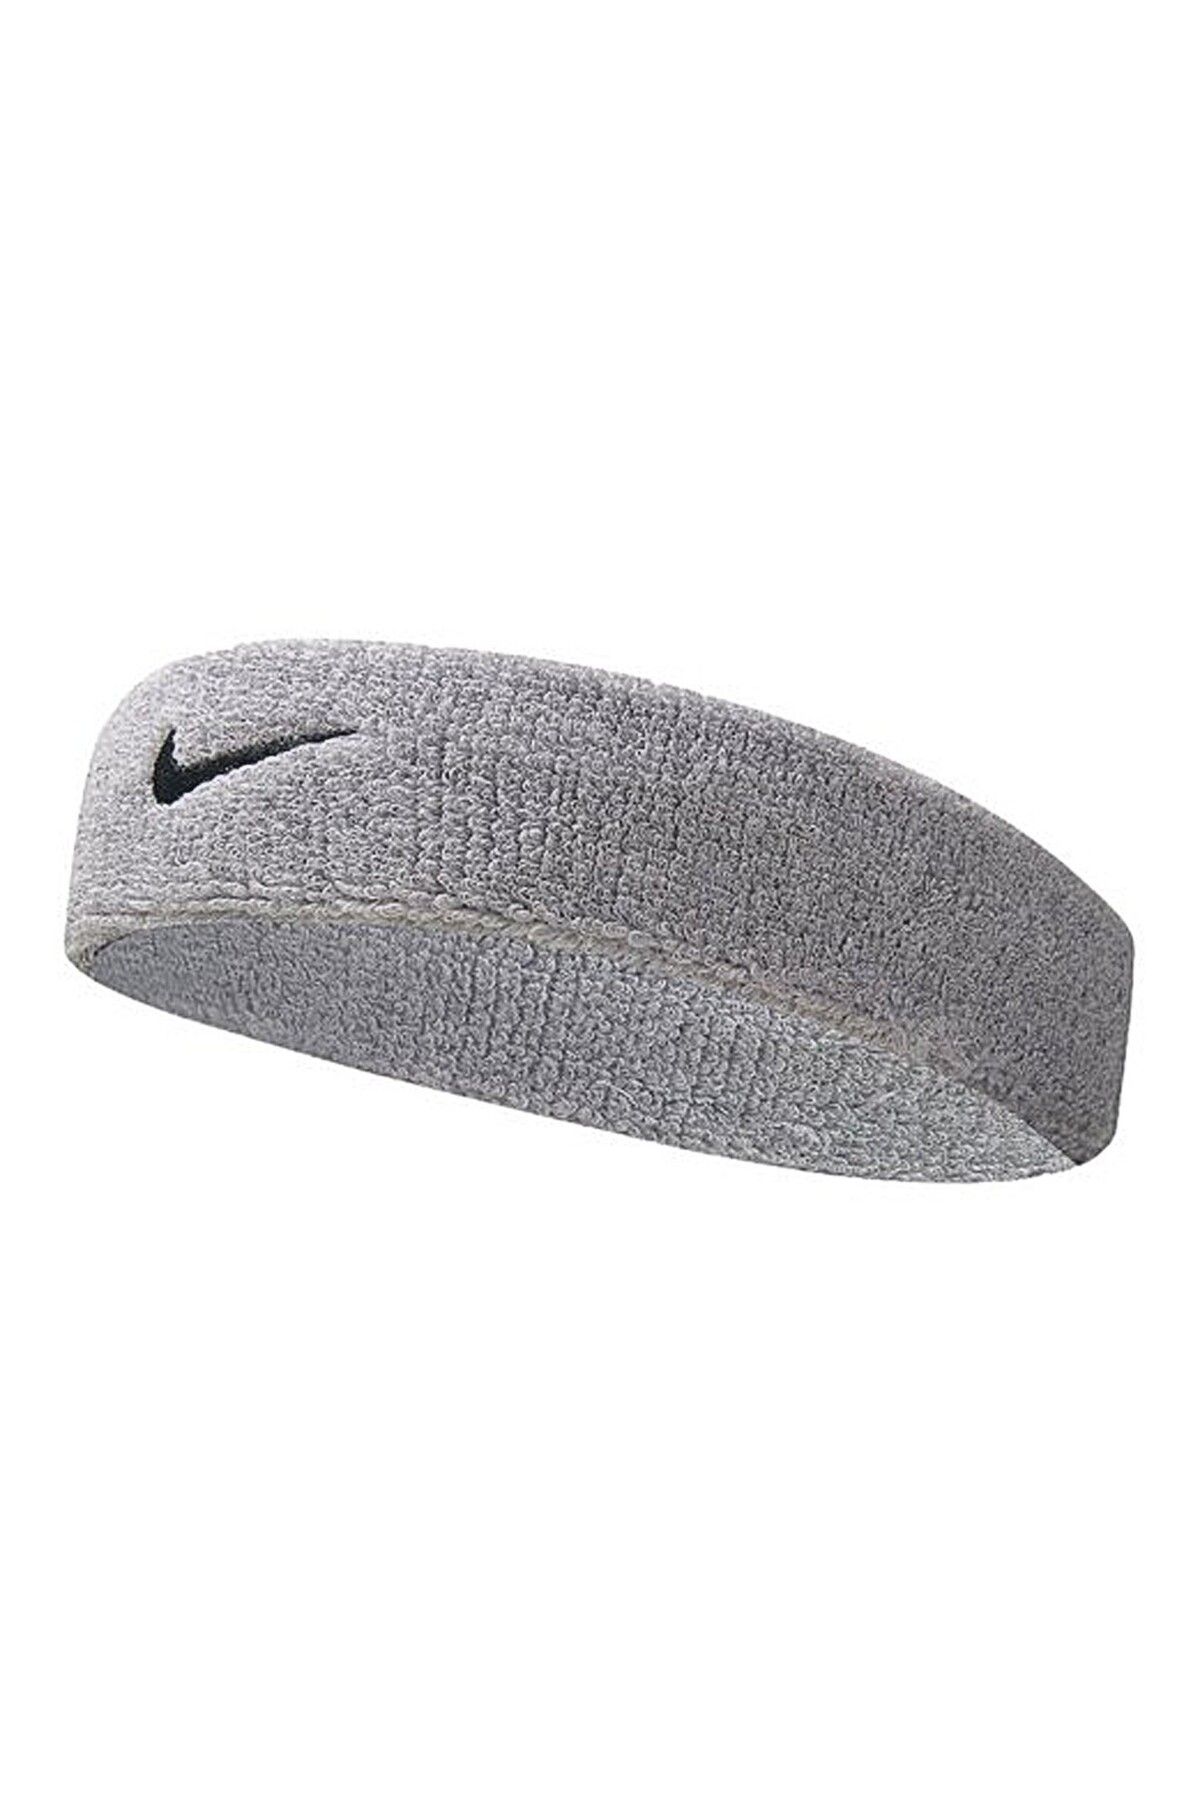 Nike Swoosh Headband Grey Heather/black Osfm, One Size/5